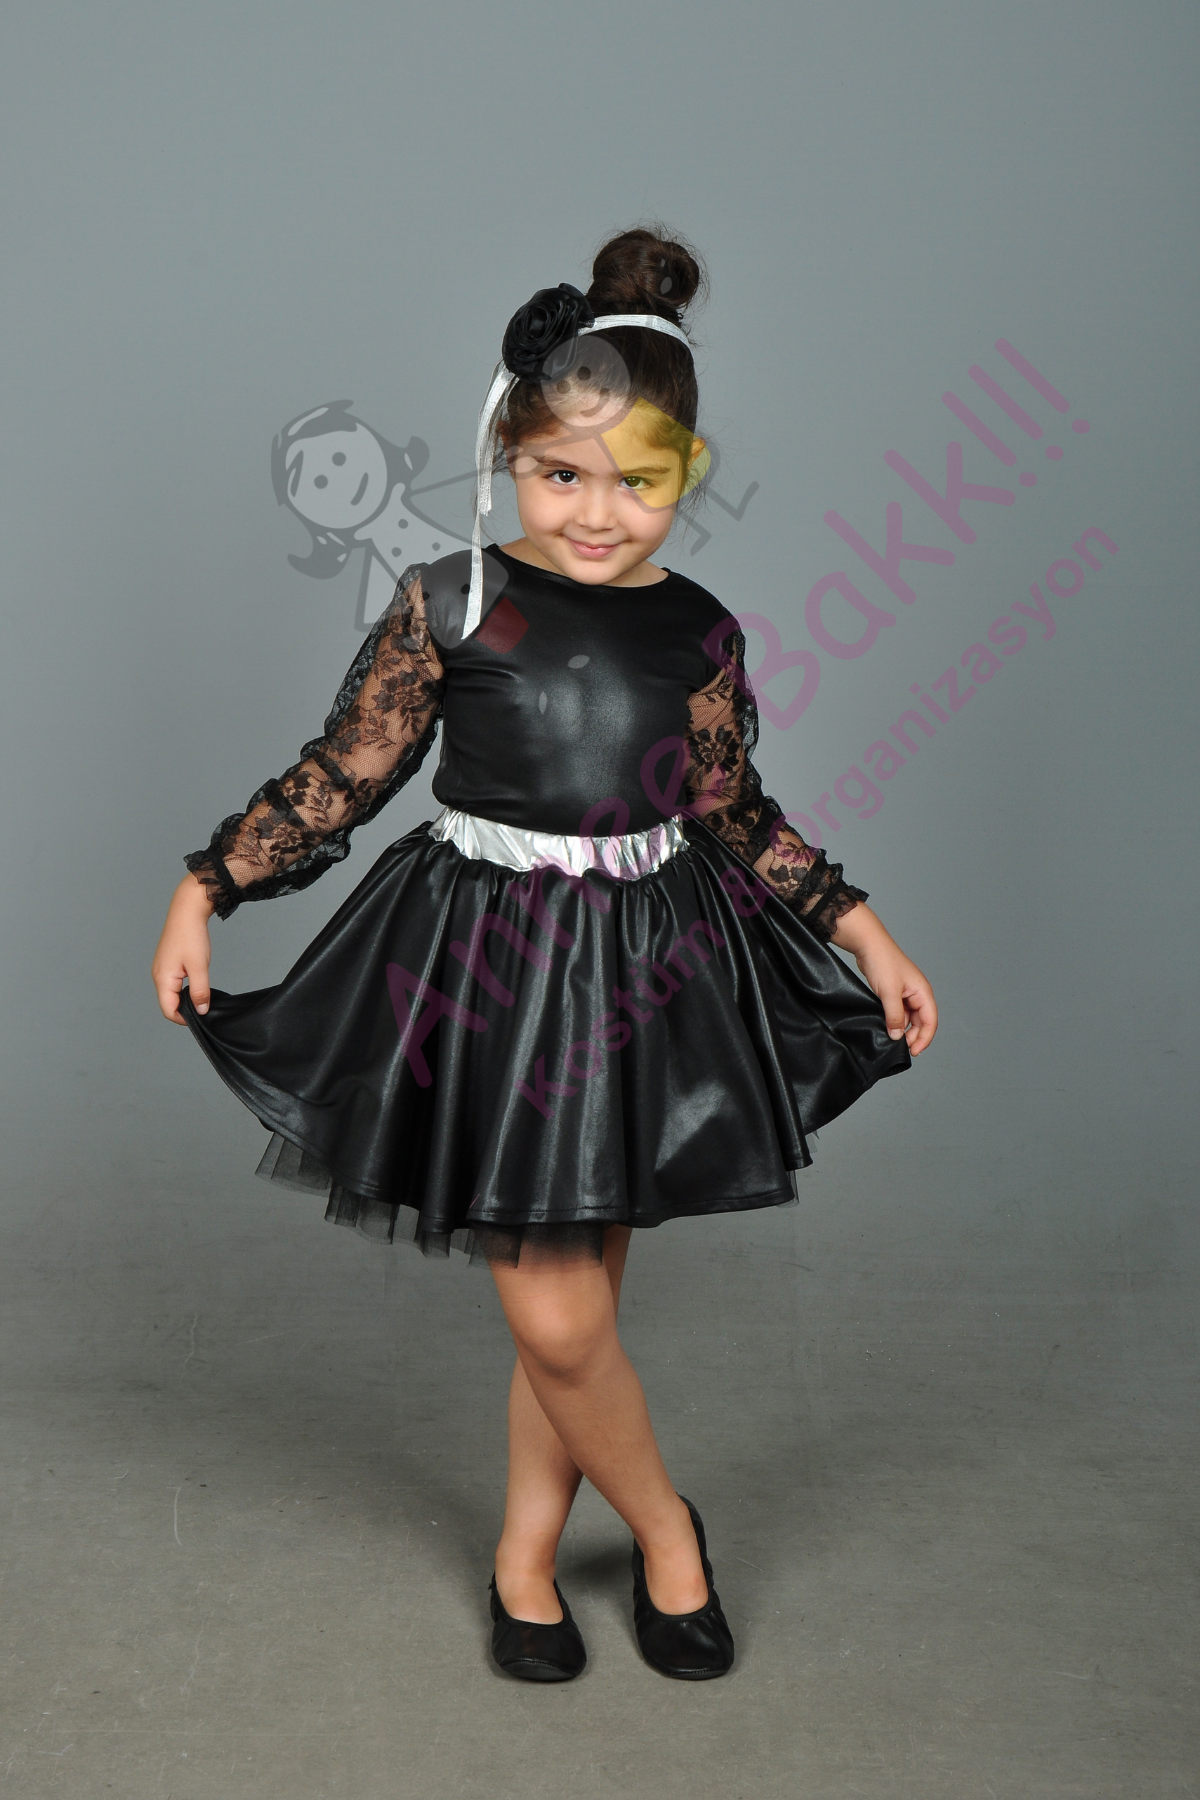 Siyah Renk Modern Dans Kostümü, Tüllü Kız Çocuk Dans Kostümü, Hızlı Kargo